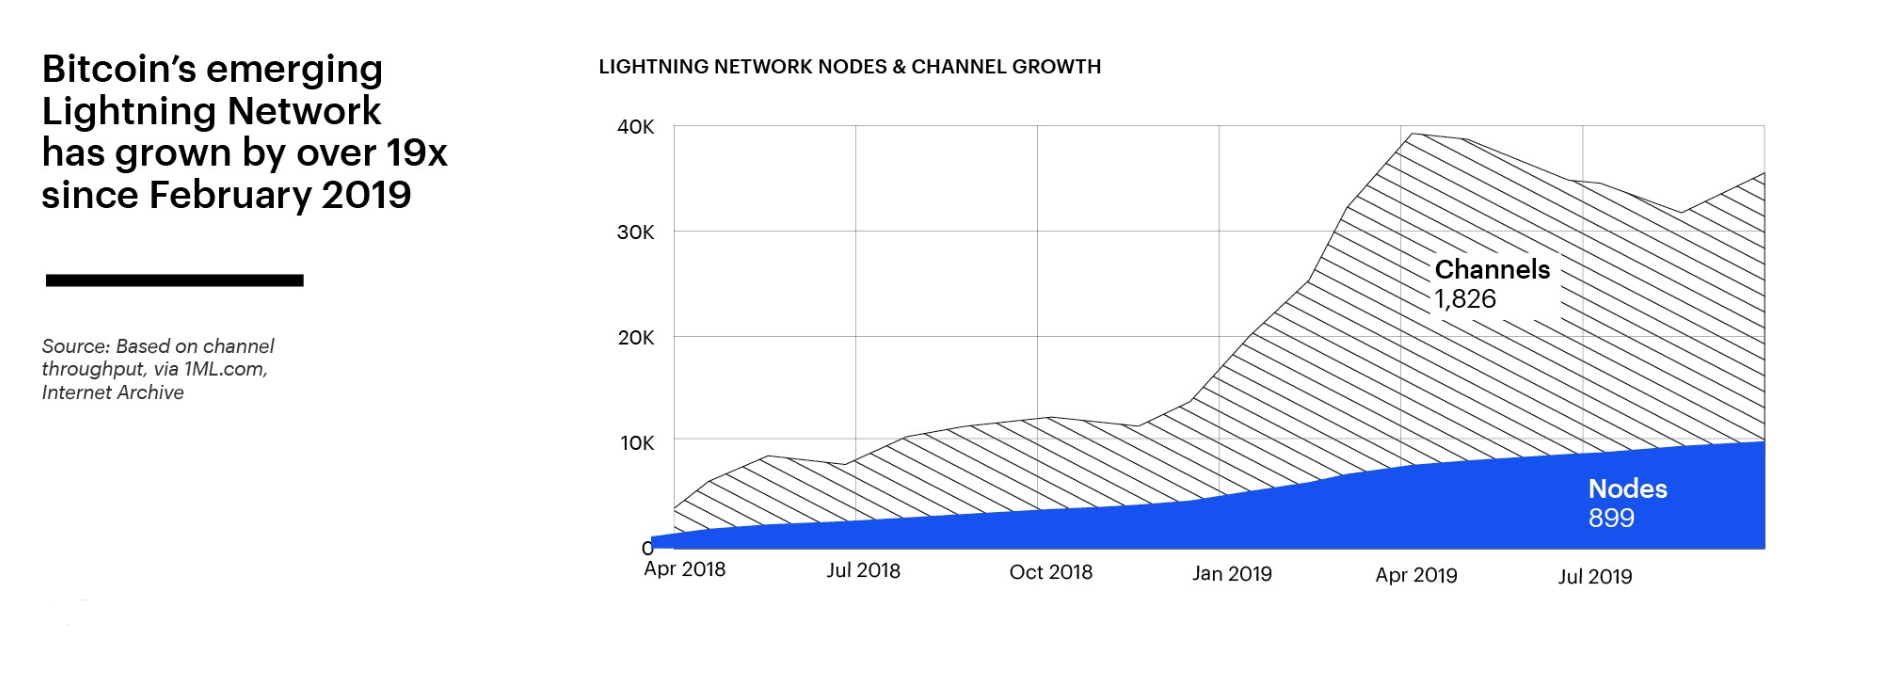 Sự tăng trưởng của số lượng node cũng như các kênh Lightning